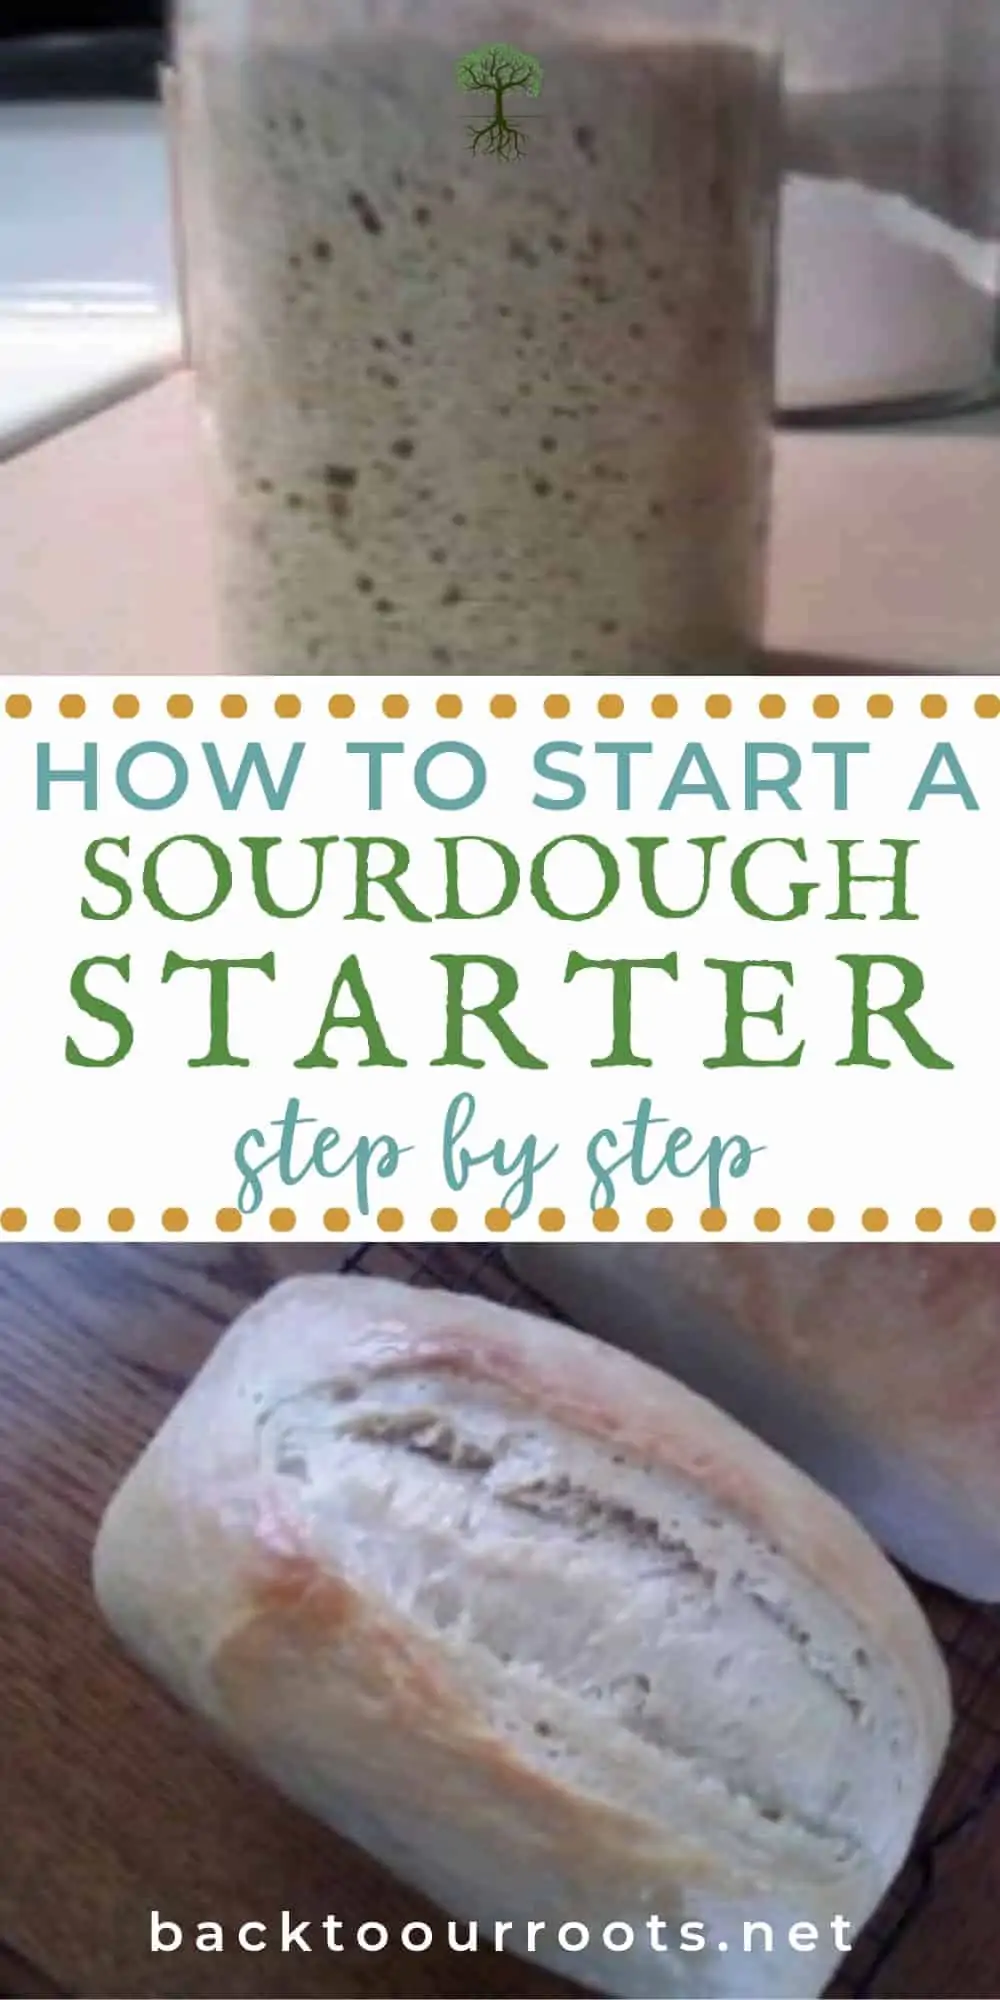 How to Start a Sourdough Starter